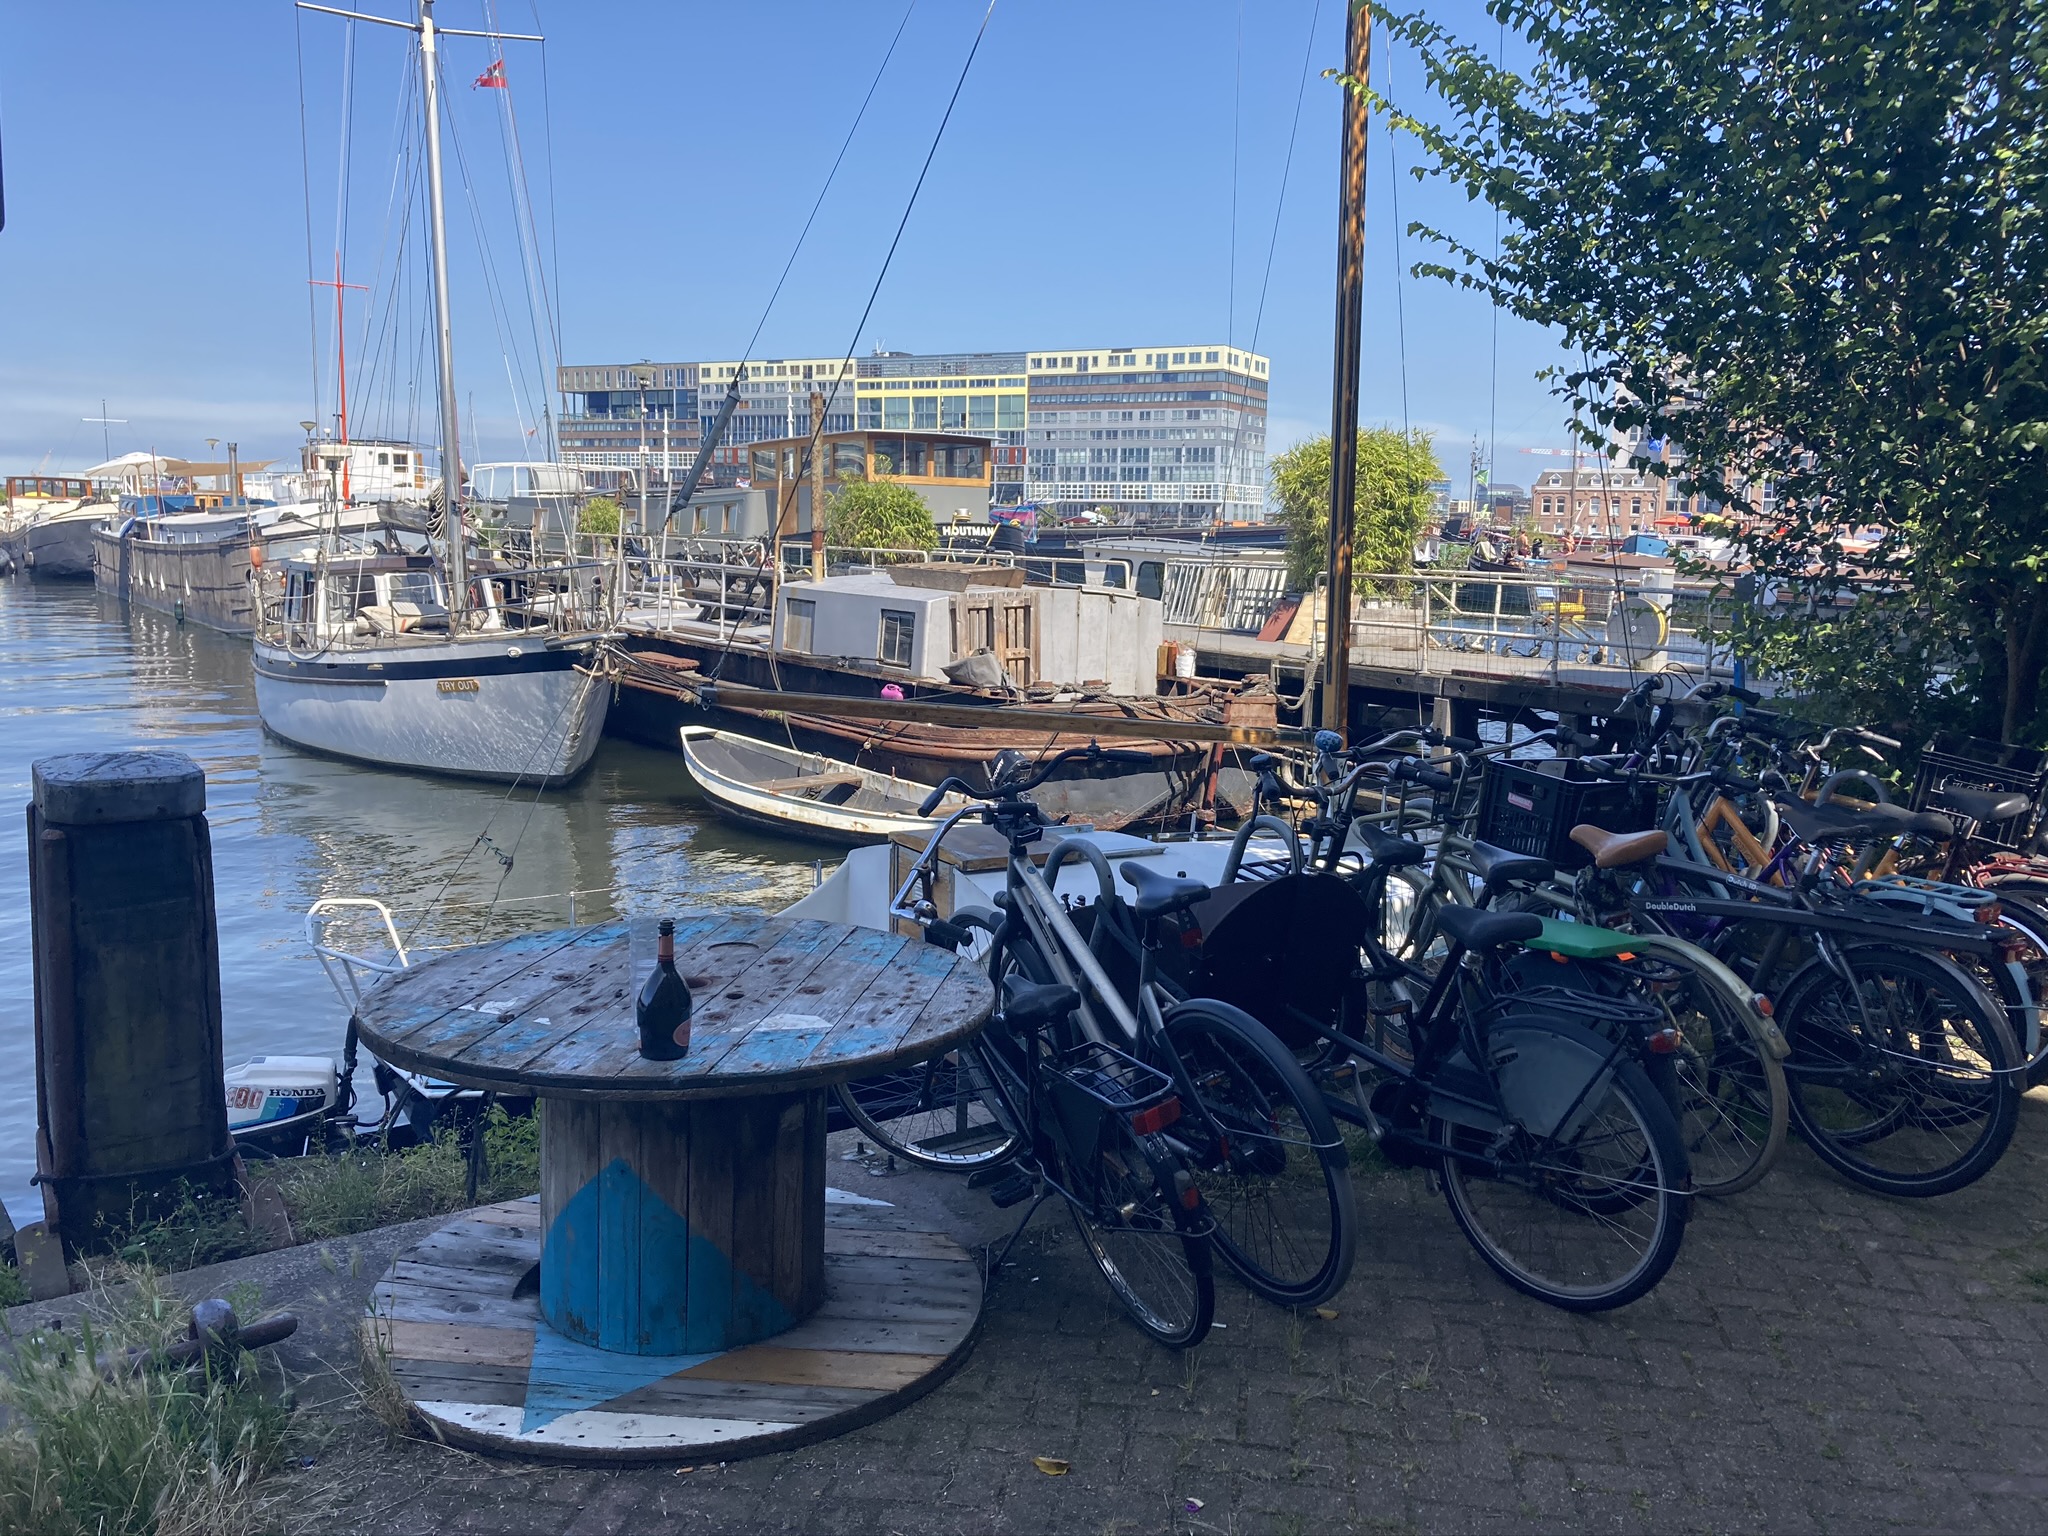 Oude Houthaven Amsterdam - Leuk verborgen plekje langs het water tijdens ongebruikelijke fietstour met Lex and the City gids